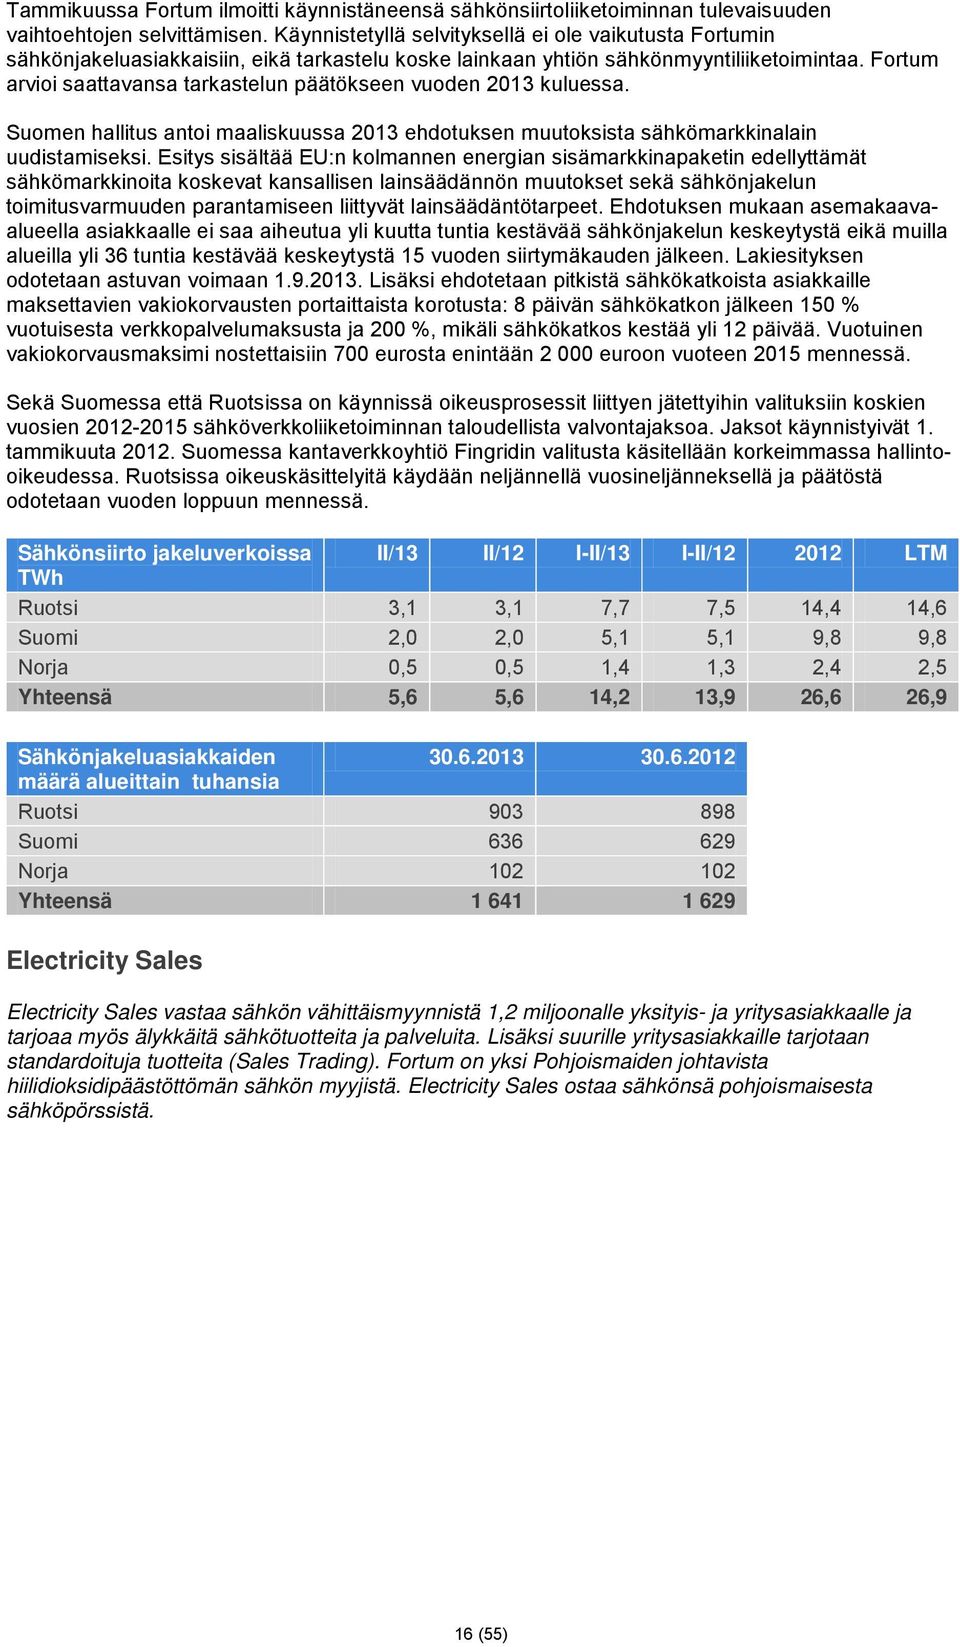 Fortum arvioi saattavansa tarkastelun päätökseen vuoden 2013 kuluessa. Suomen hallitus antoi maaliskuussa 2013 ehdotuksen muutoksista sähkömarkkinalain uudistamiseksi.